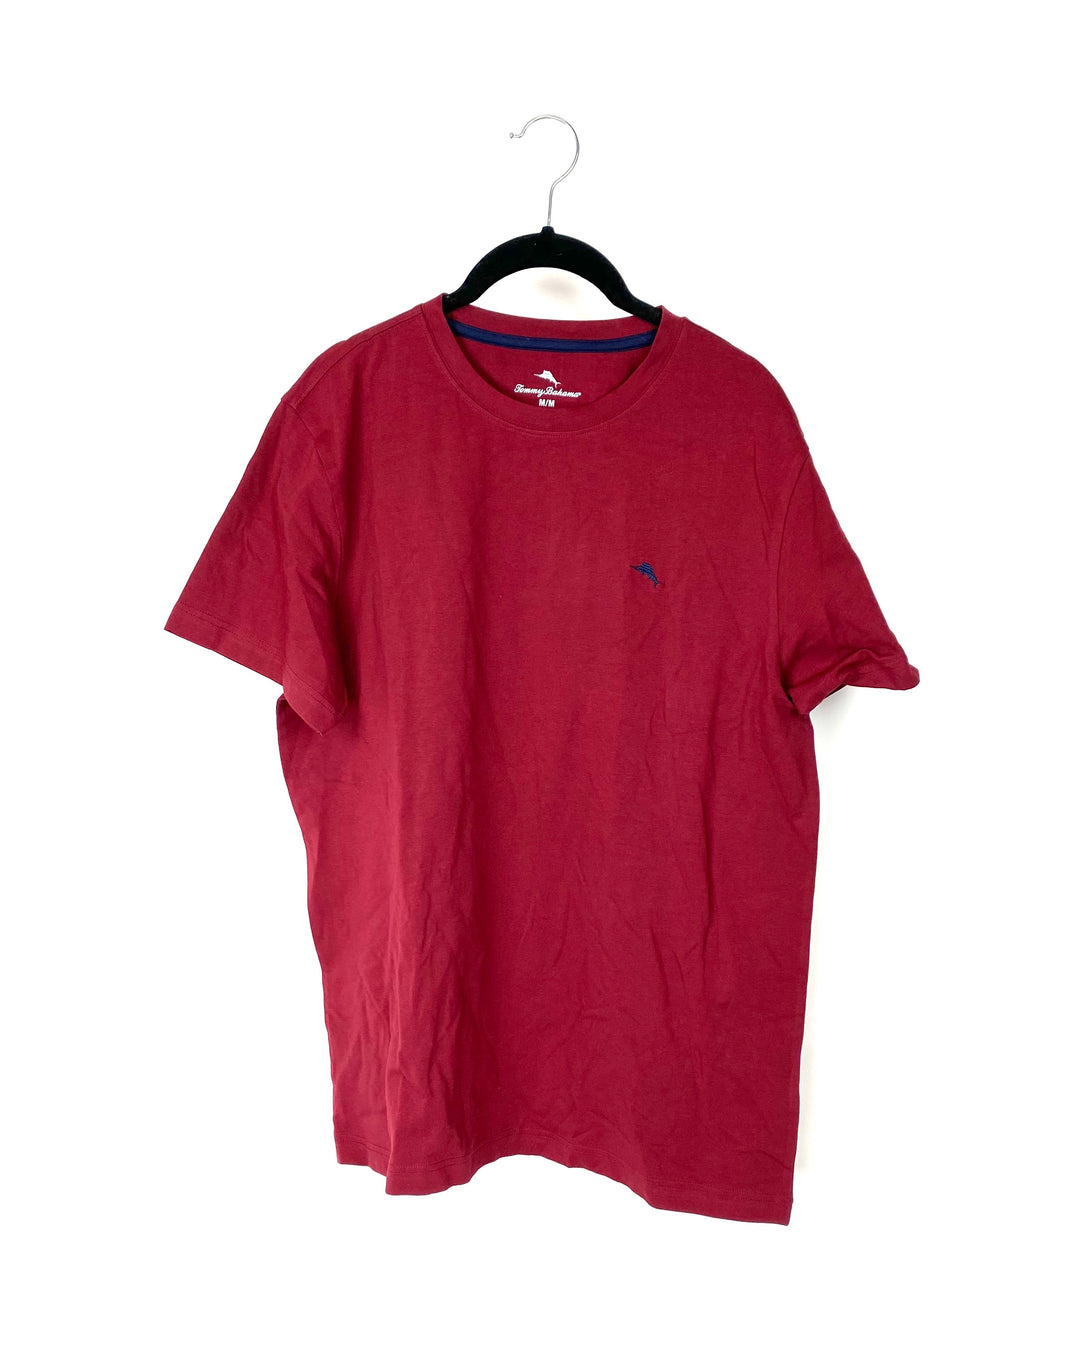 MENS Red Shirt - Medium